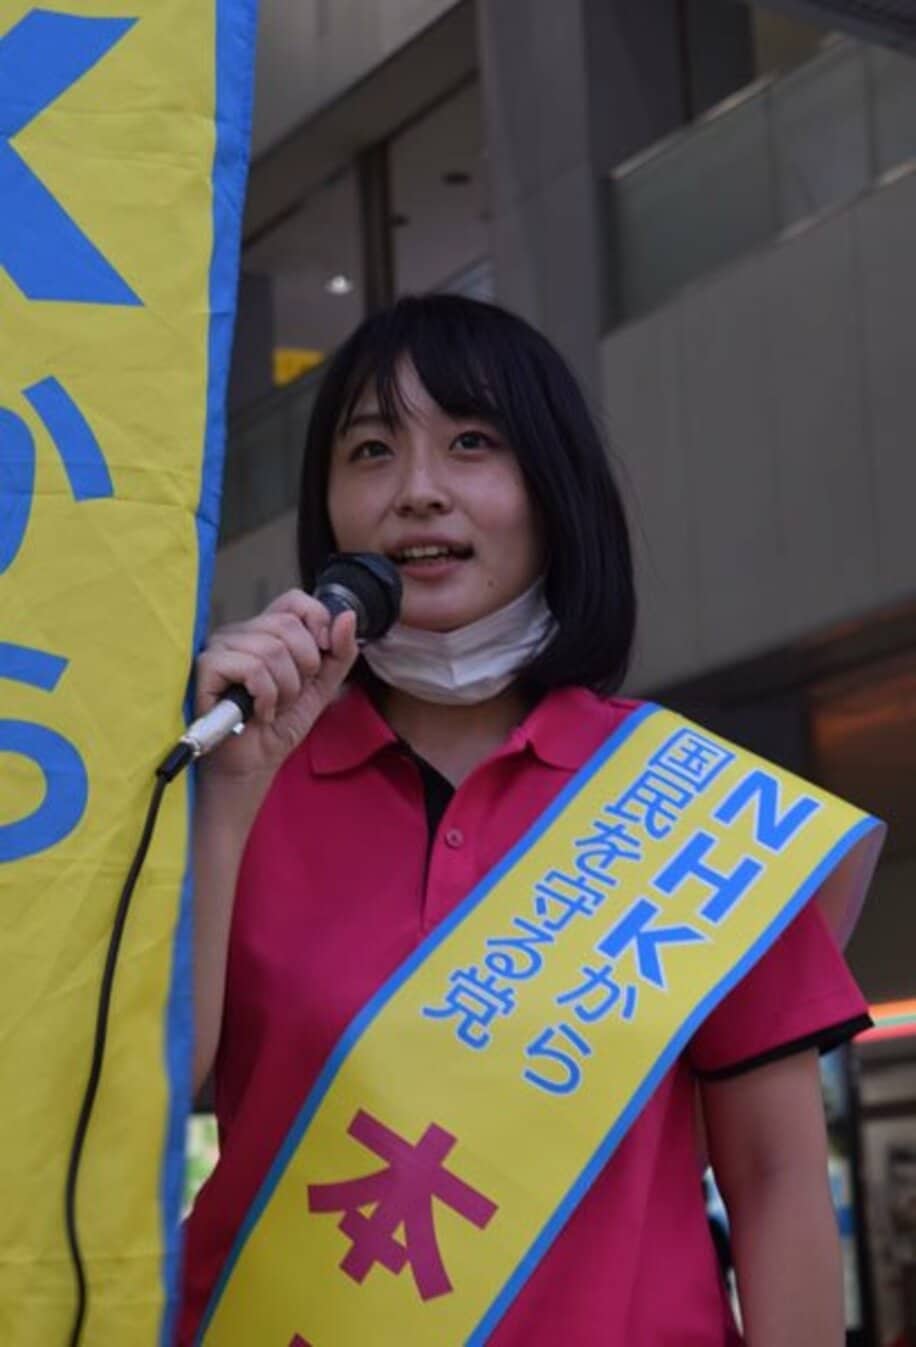  和泉市議選に出馬する〝ひとみ姫〟こと多田ひとみ氏